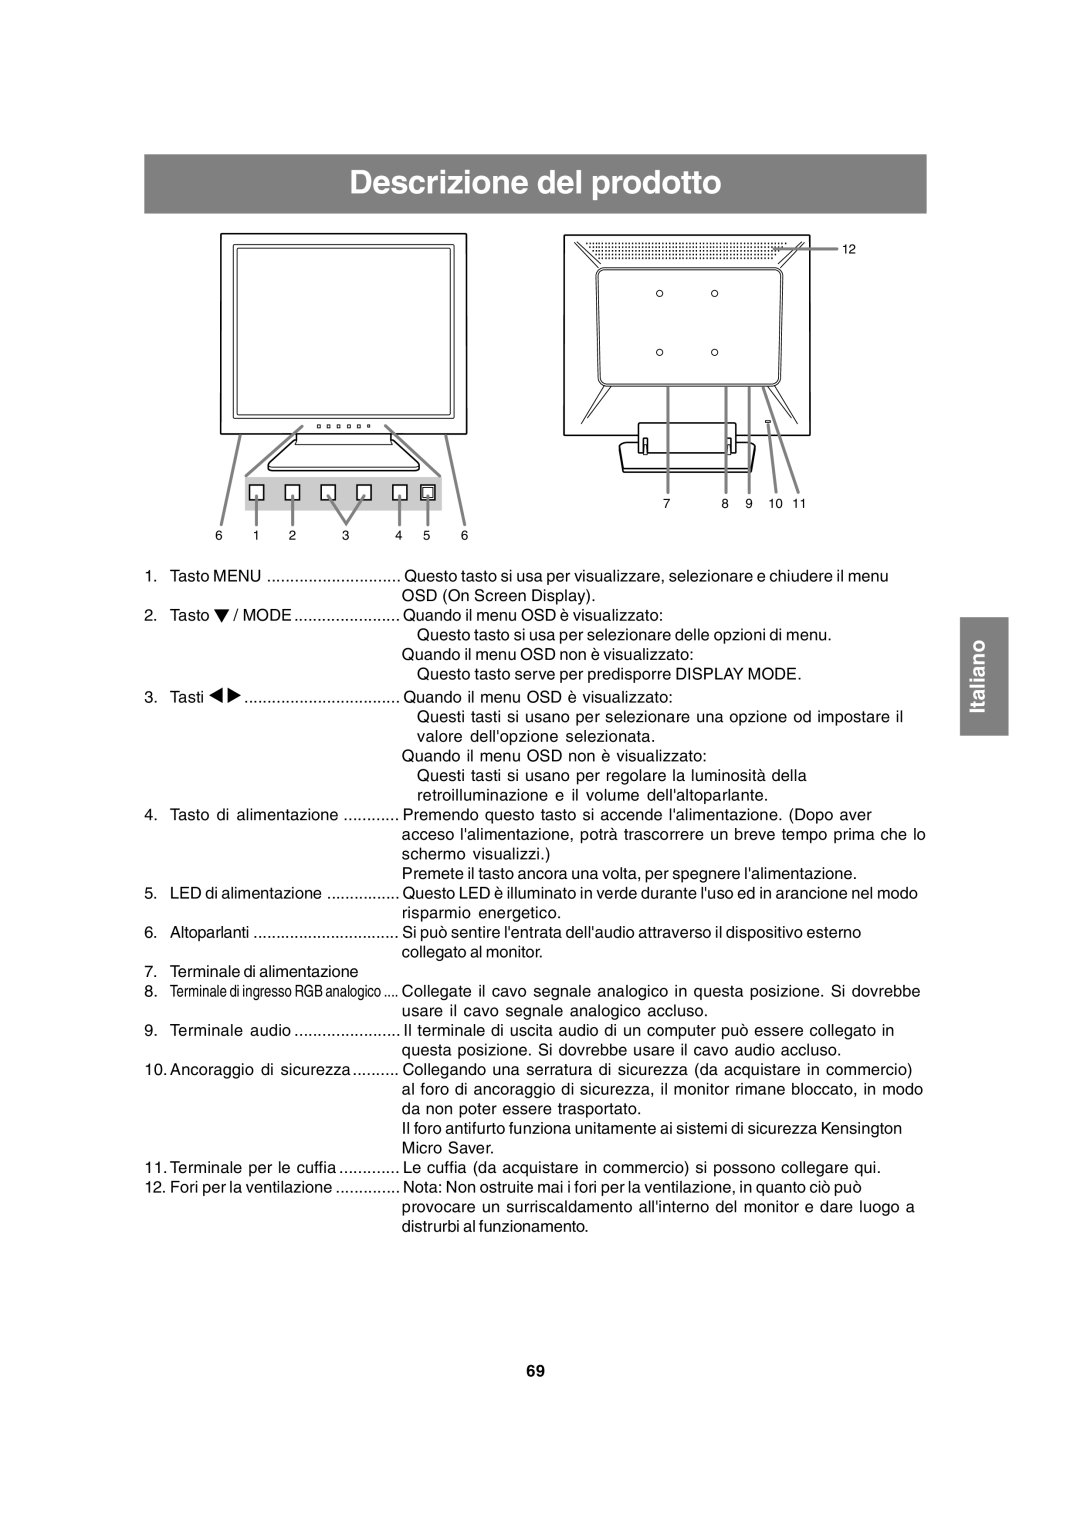 Sharp LL-T15A4 operation manual Descrizione del prodotto, Italiano 